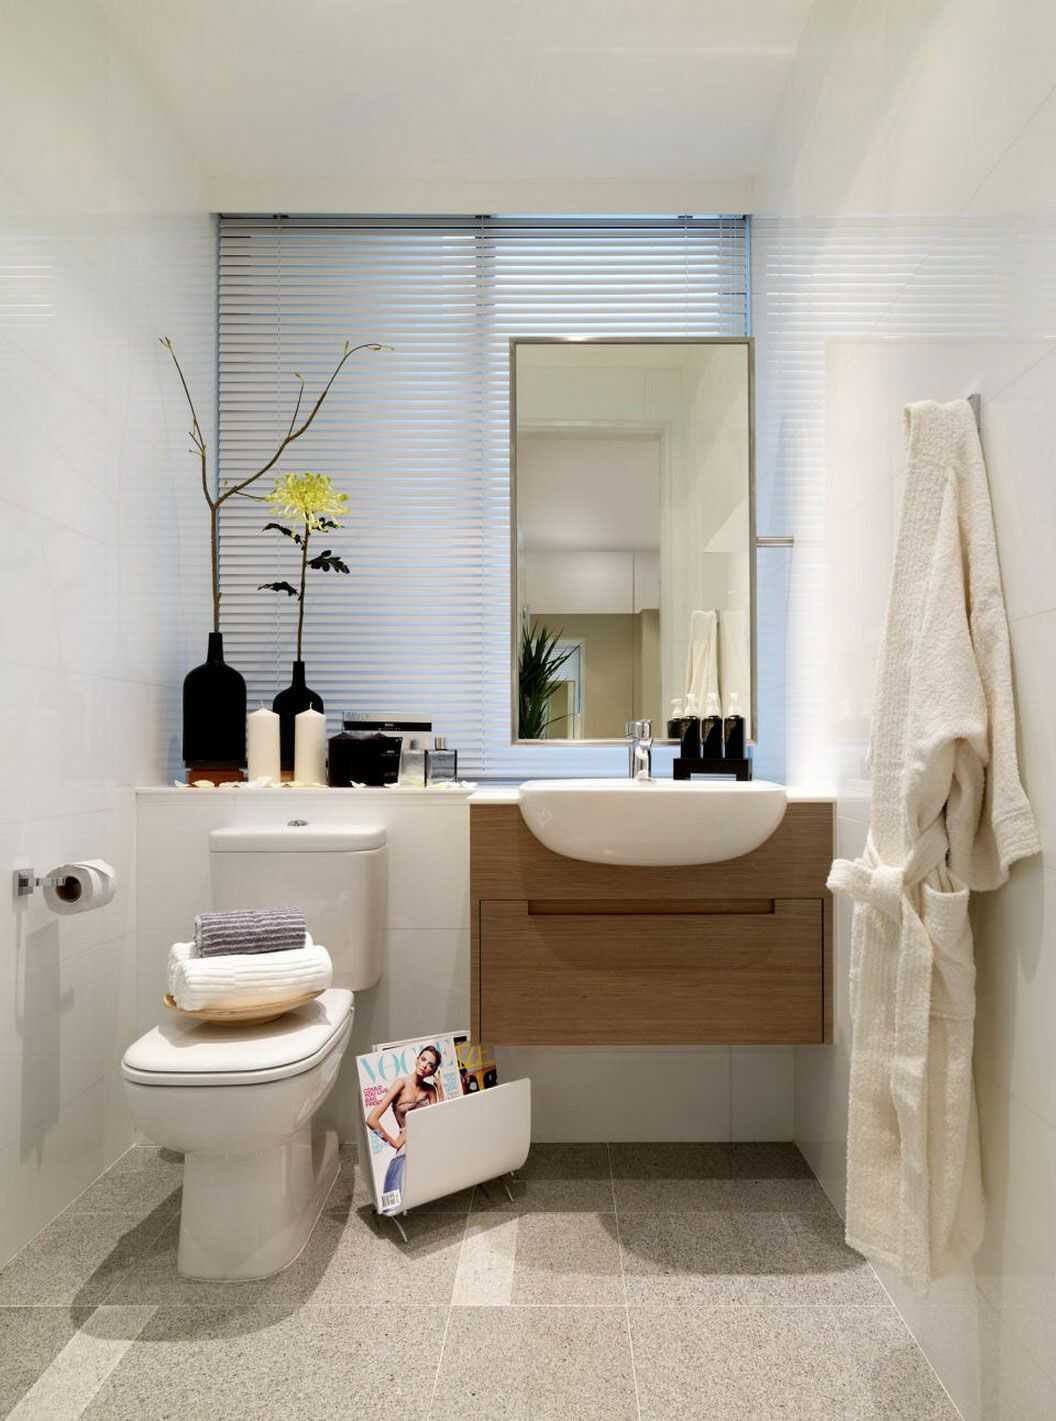 Thiết kế phòng tắm 6m2 thời thượng là xu hướng mới nhất trong lĩnh vực kiến trúc. Với sự sáng tạo và sự đột phá trong bố trí không gian và vật liệu, bạn sẽ có được không gian phòng tắm 6m2 độc đáo và đầy phong cách. Đừng bỏ lỡ cơ hội để sở hữu một phòng tắm 6m2 thời thượng và đậm chất cá nhân.